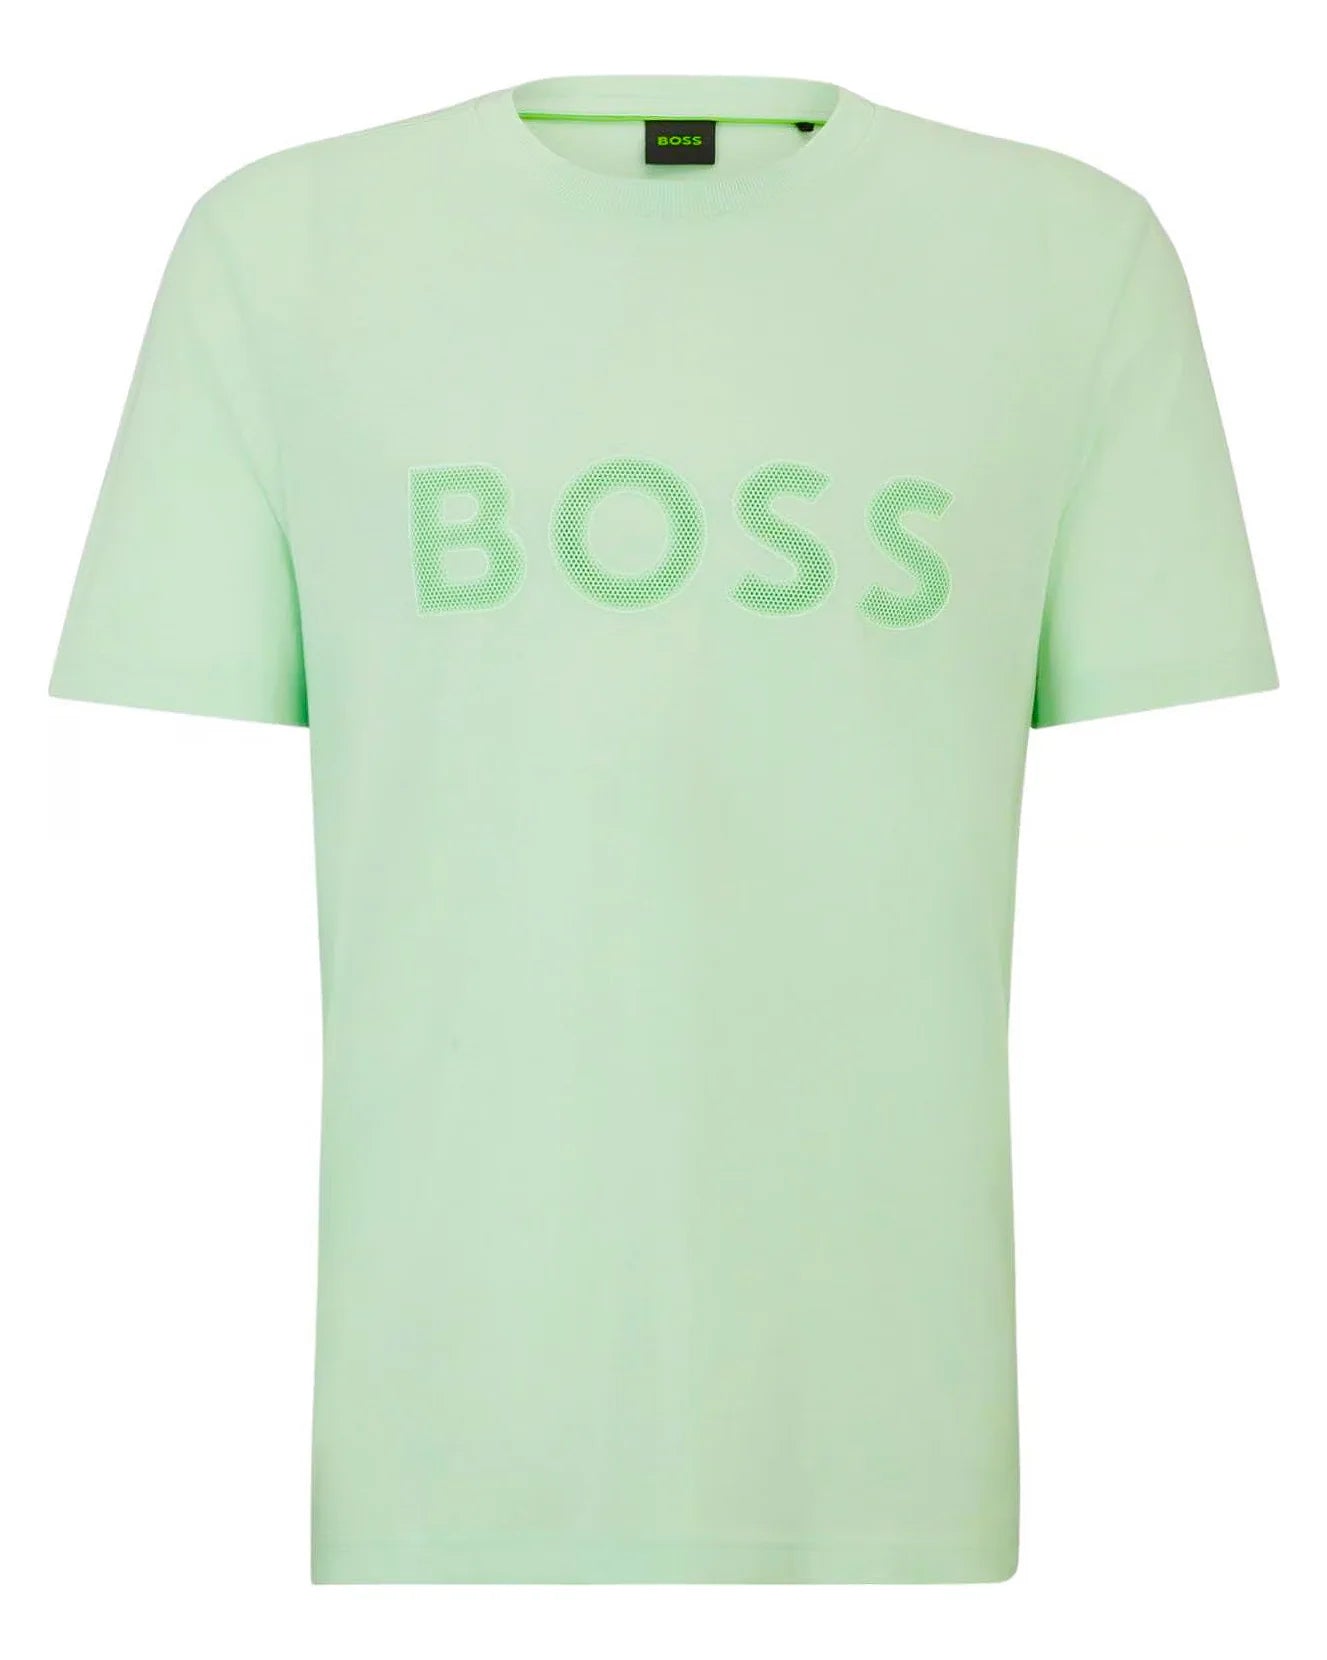 Boss T-shirt Tee verde